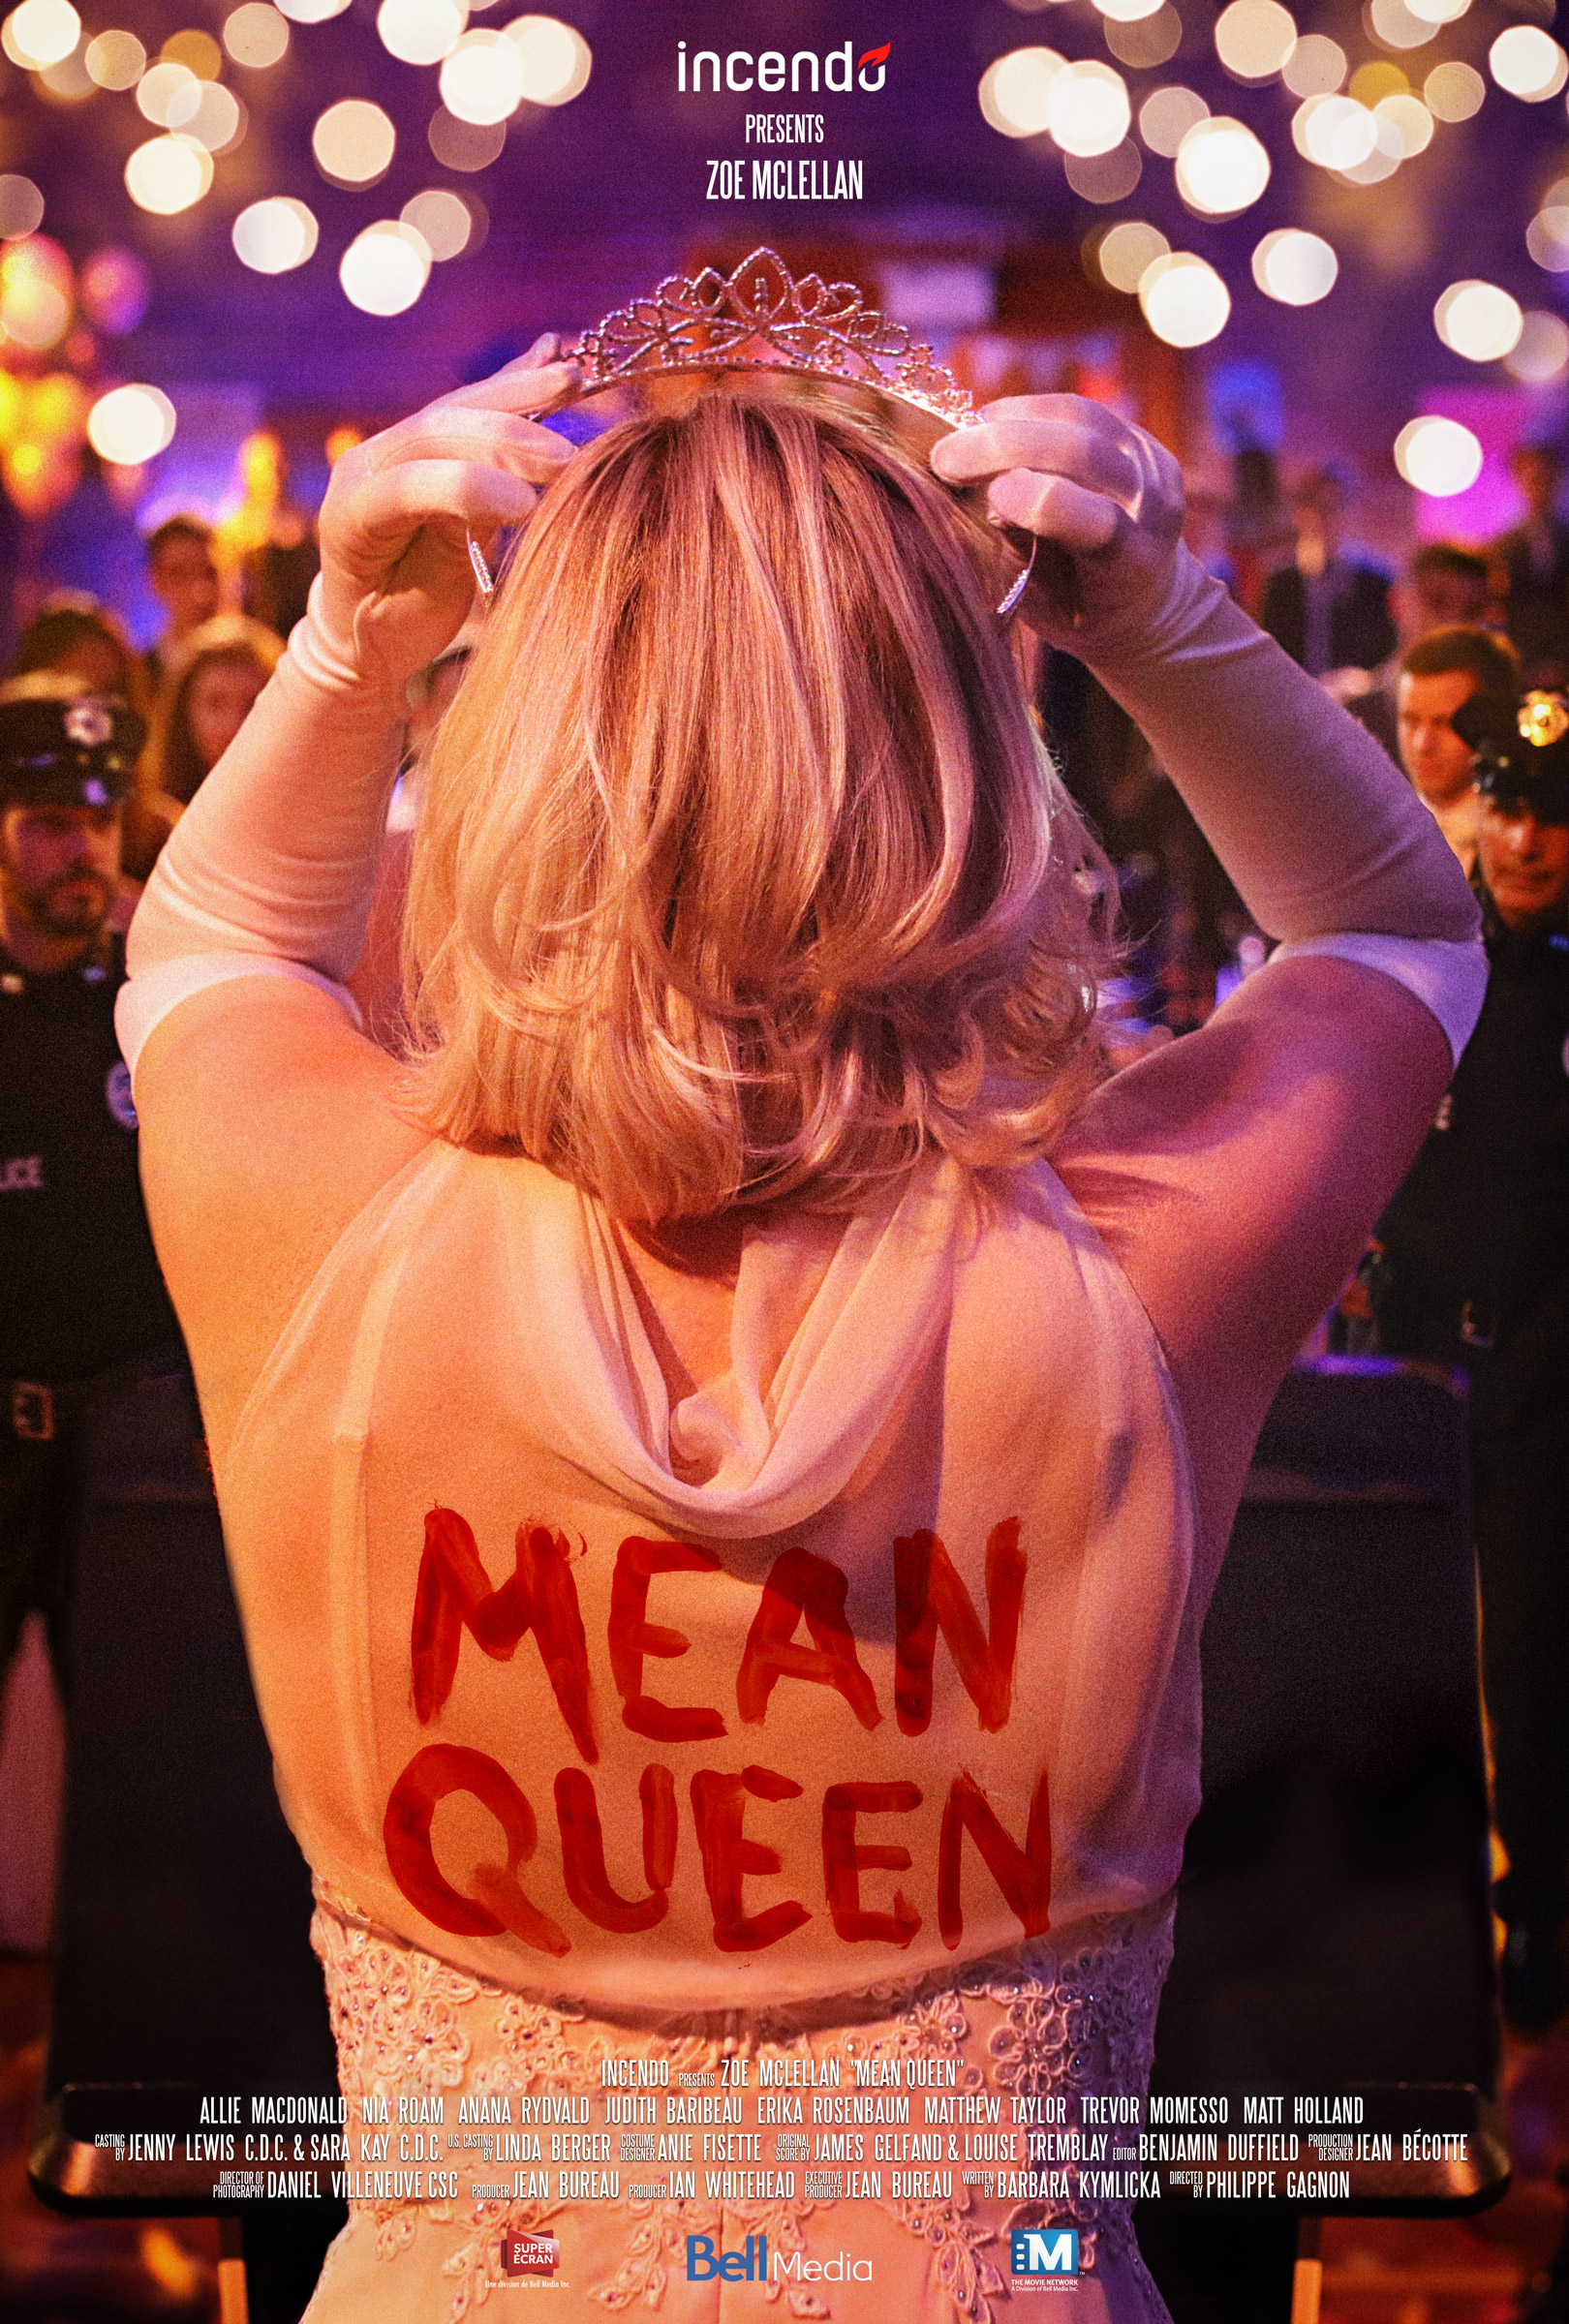 Psycho Prom Queen (2018) starring Zoe McLellan on DVD on DVD